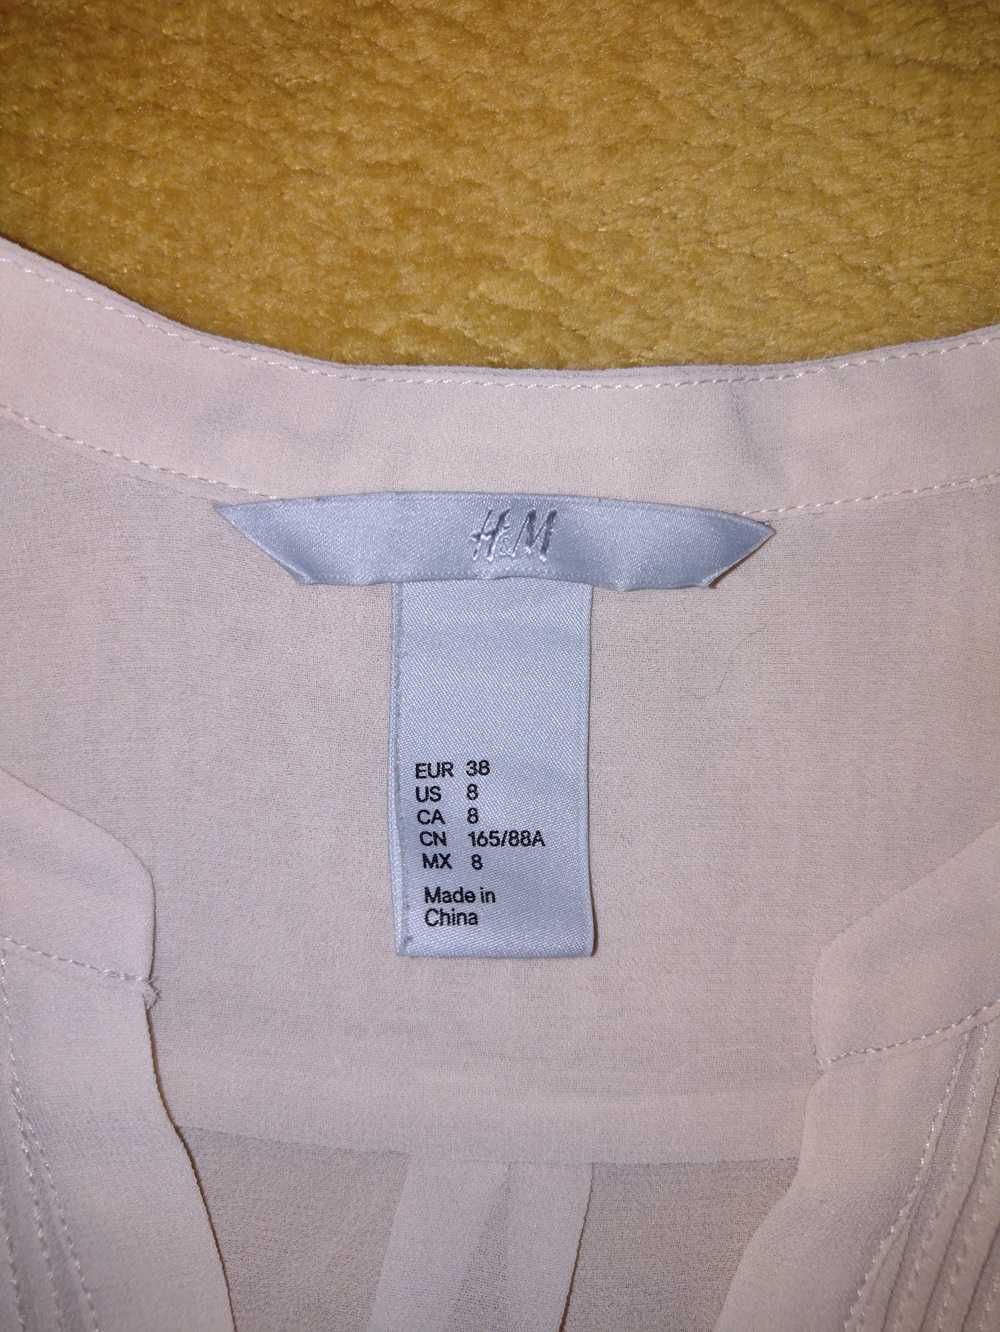 Cienka kremowa bluzka H&M roz. M/38